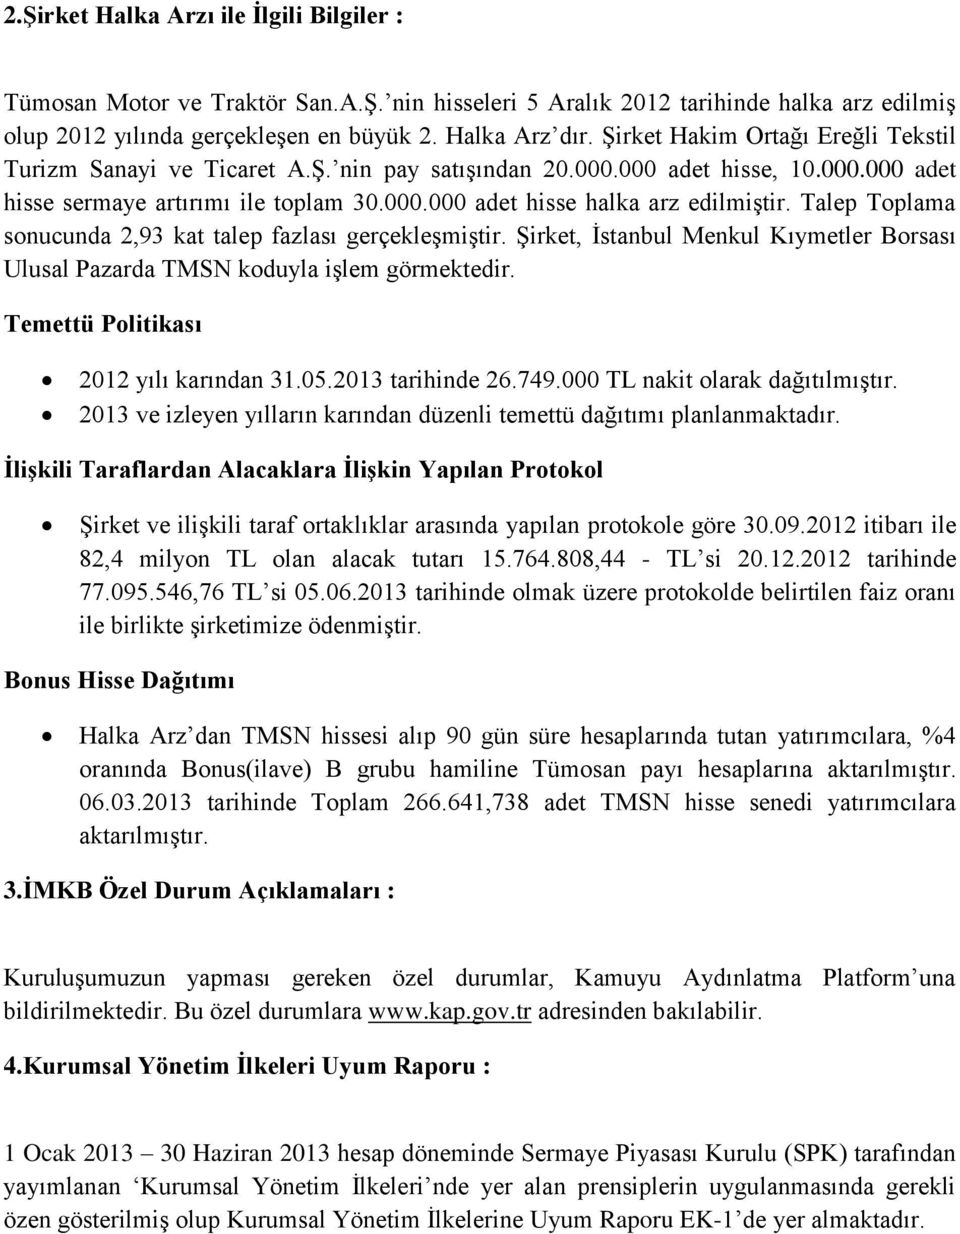 Talep Toplama sonucunda 2,93 kat talep fazlası gerçekleşmiştir. Şirket, İstanbul Menkul Kıymetler Borsası Ulusal Pazarda TMSN koduyla işlem görmektedir. Temettü Politikası 2012 yılı karından 31.05.